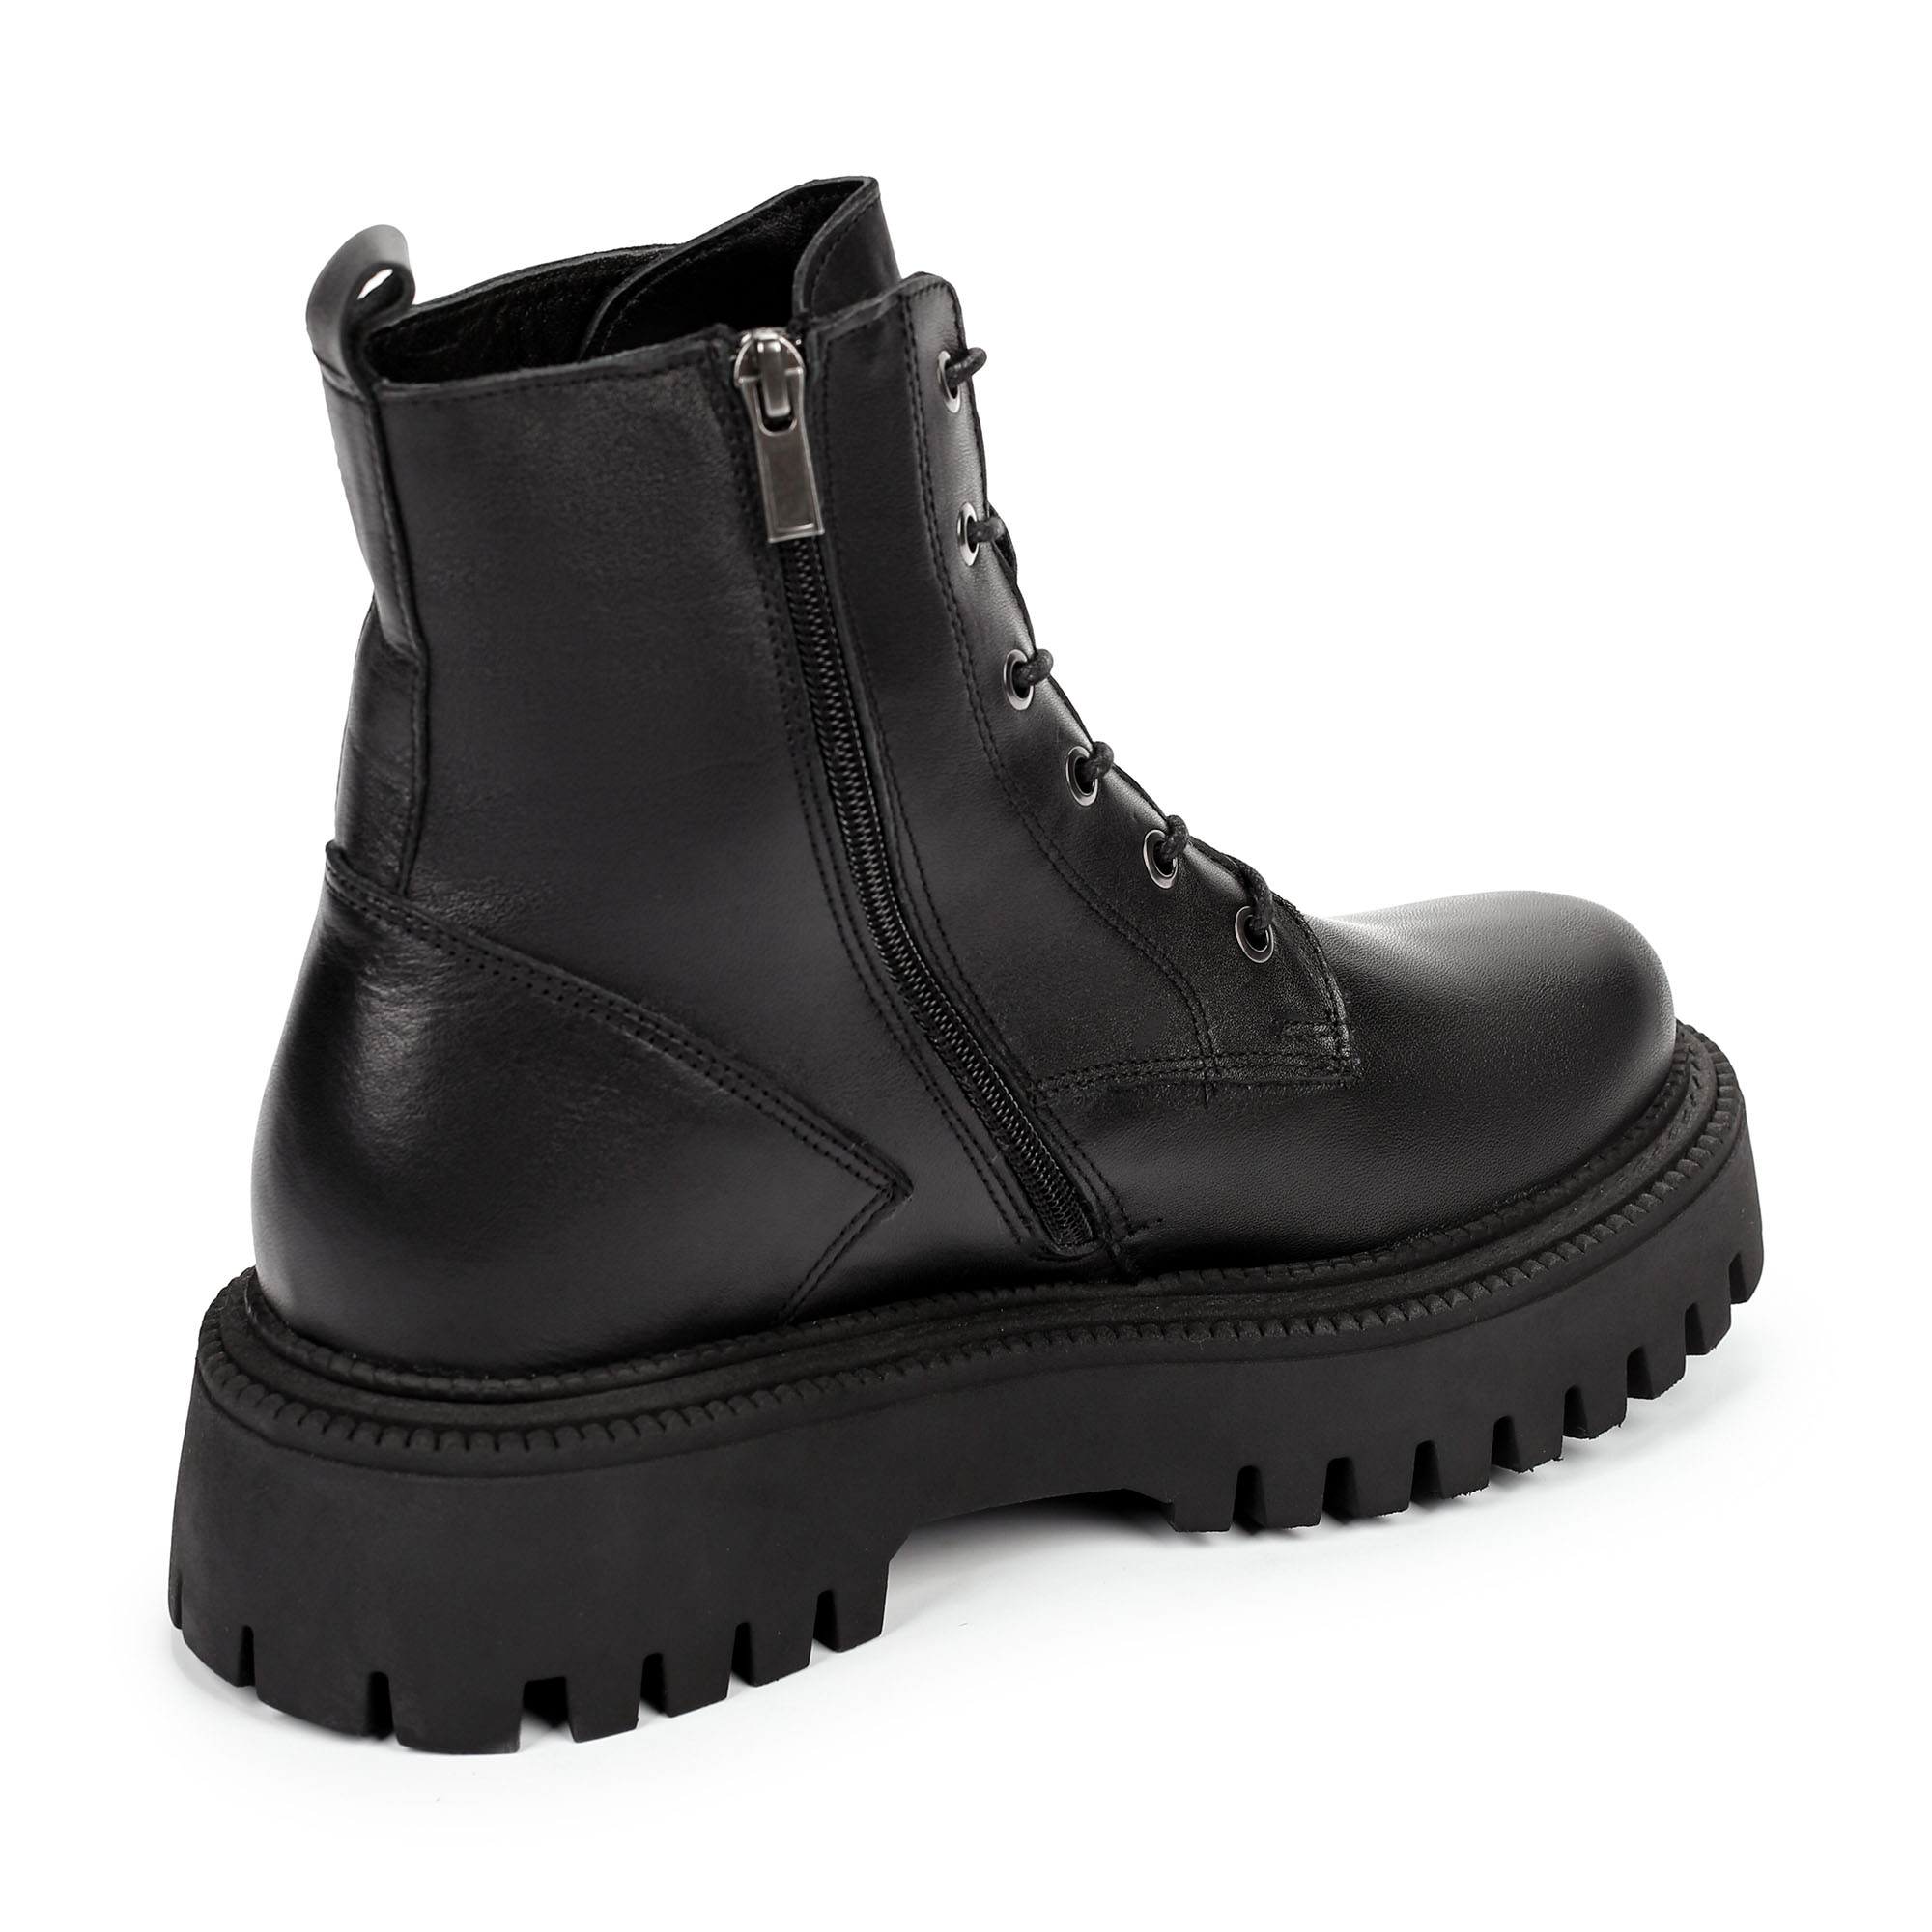 Ботинки Thomas Munz 506-145A-2102, цвет черный, размер 38 - фото 3